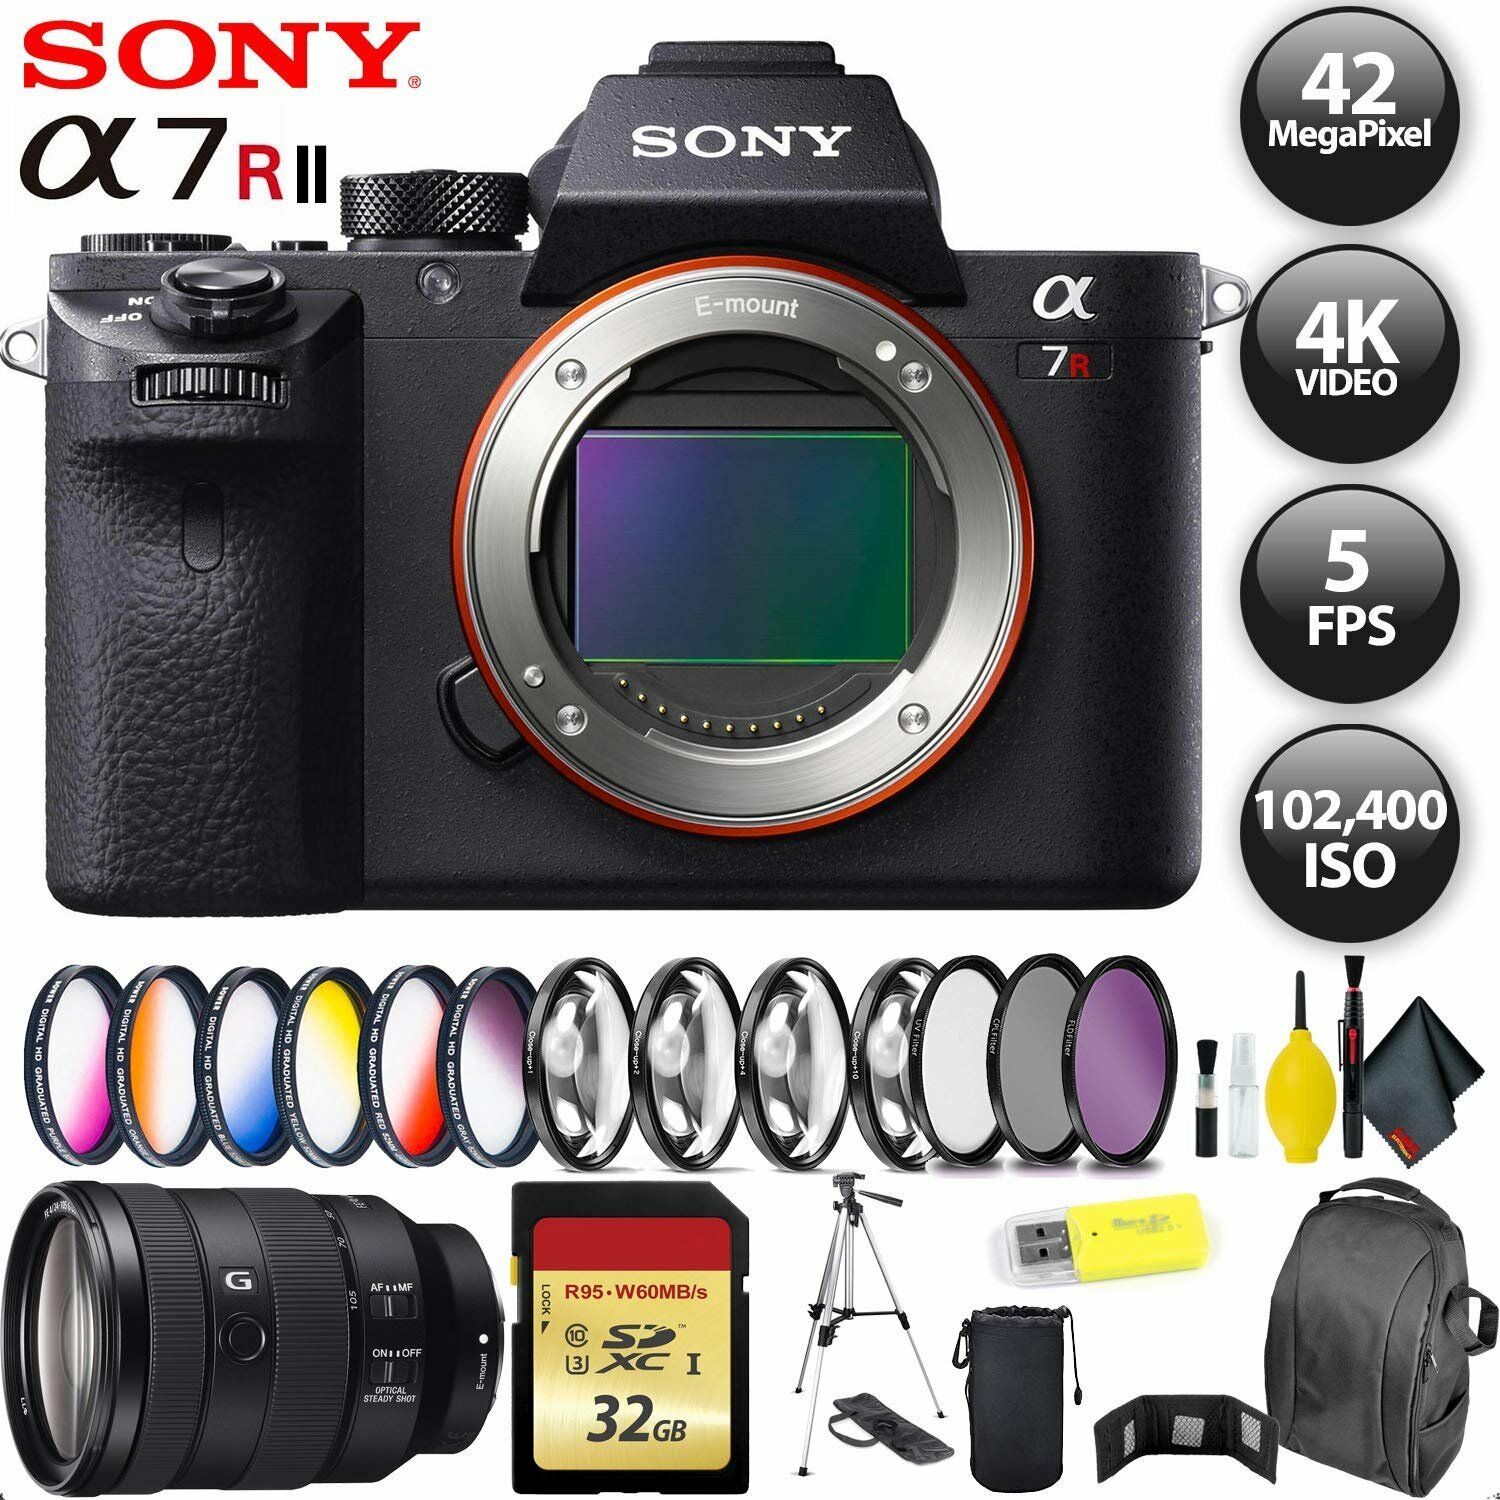 Sony Alpha a7R II Mirrorless Digital Camera + 256GB Memory Card + Sony FE 24-105mm Lens